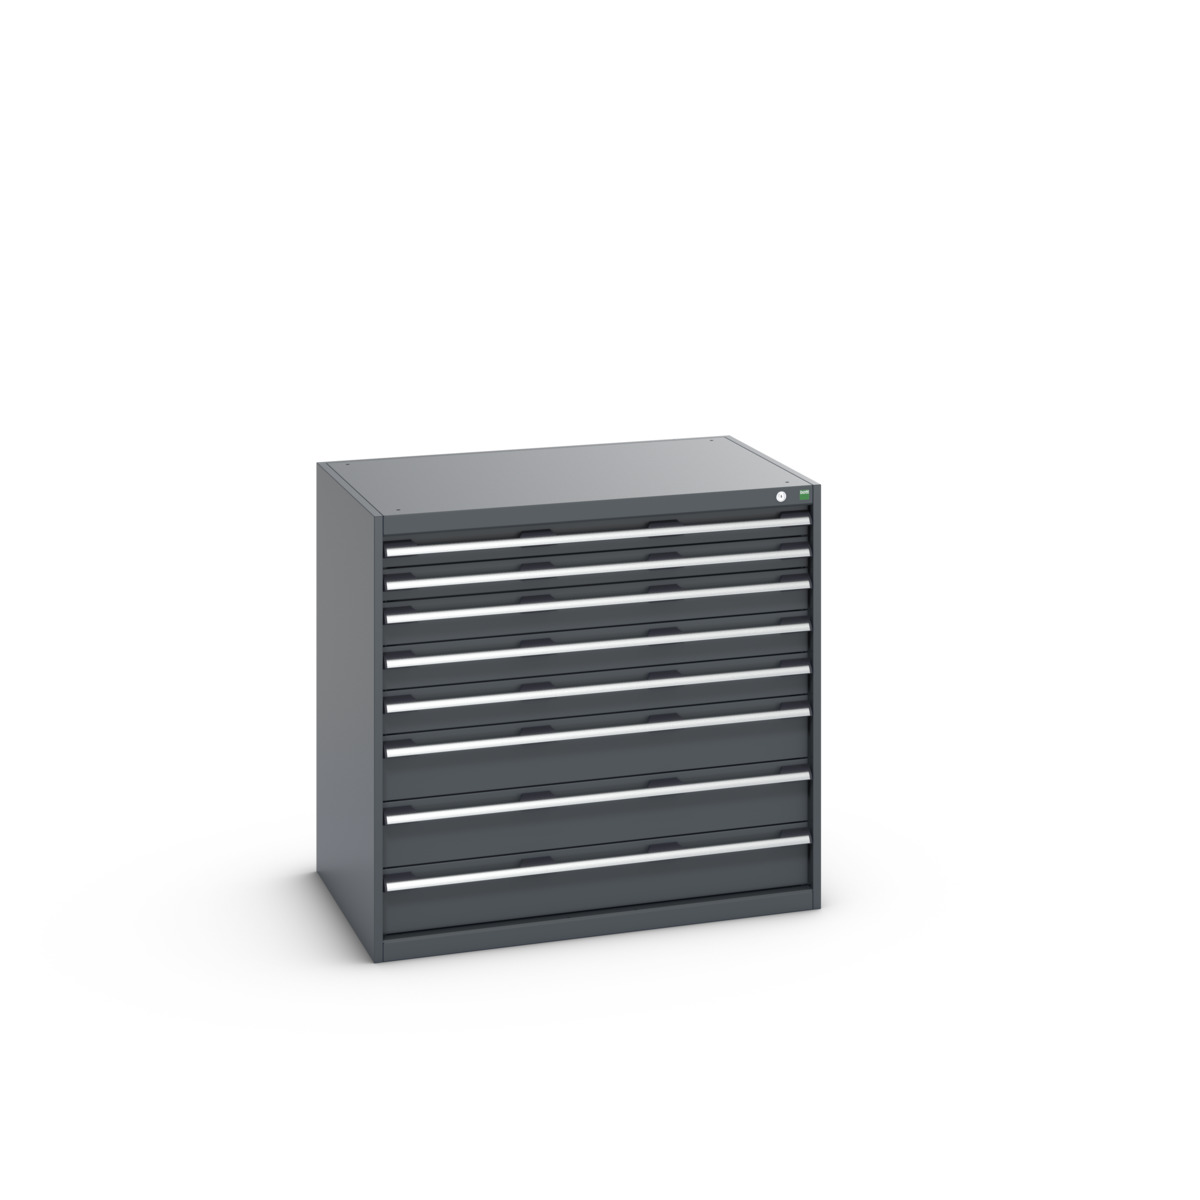 40029025.77V - cubio drawer cabinet